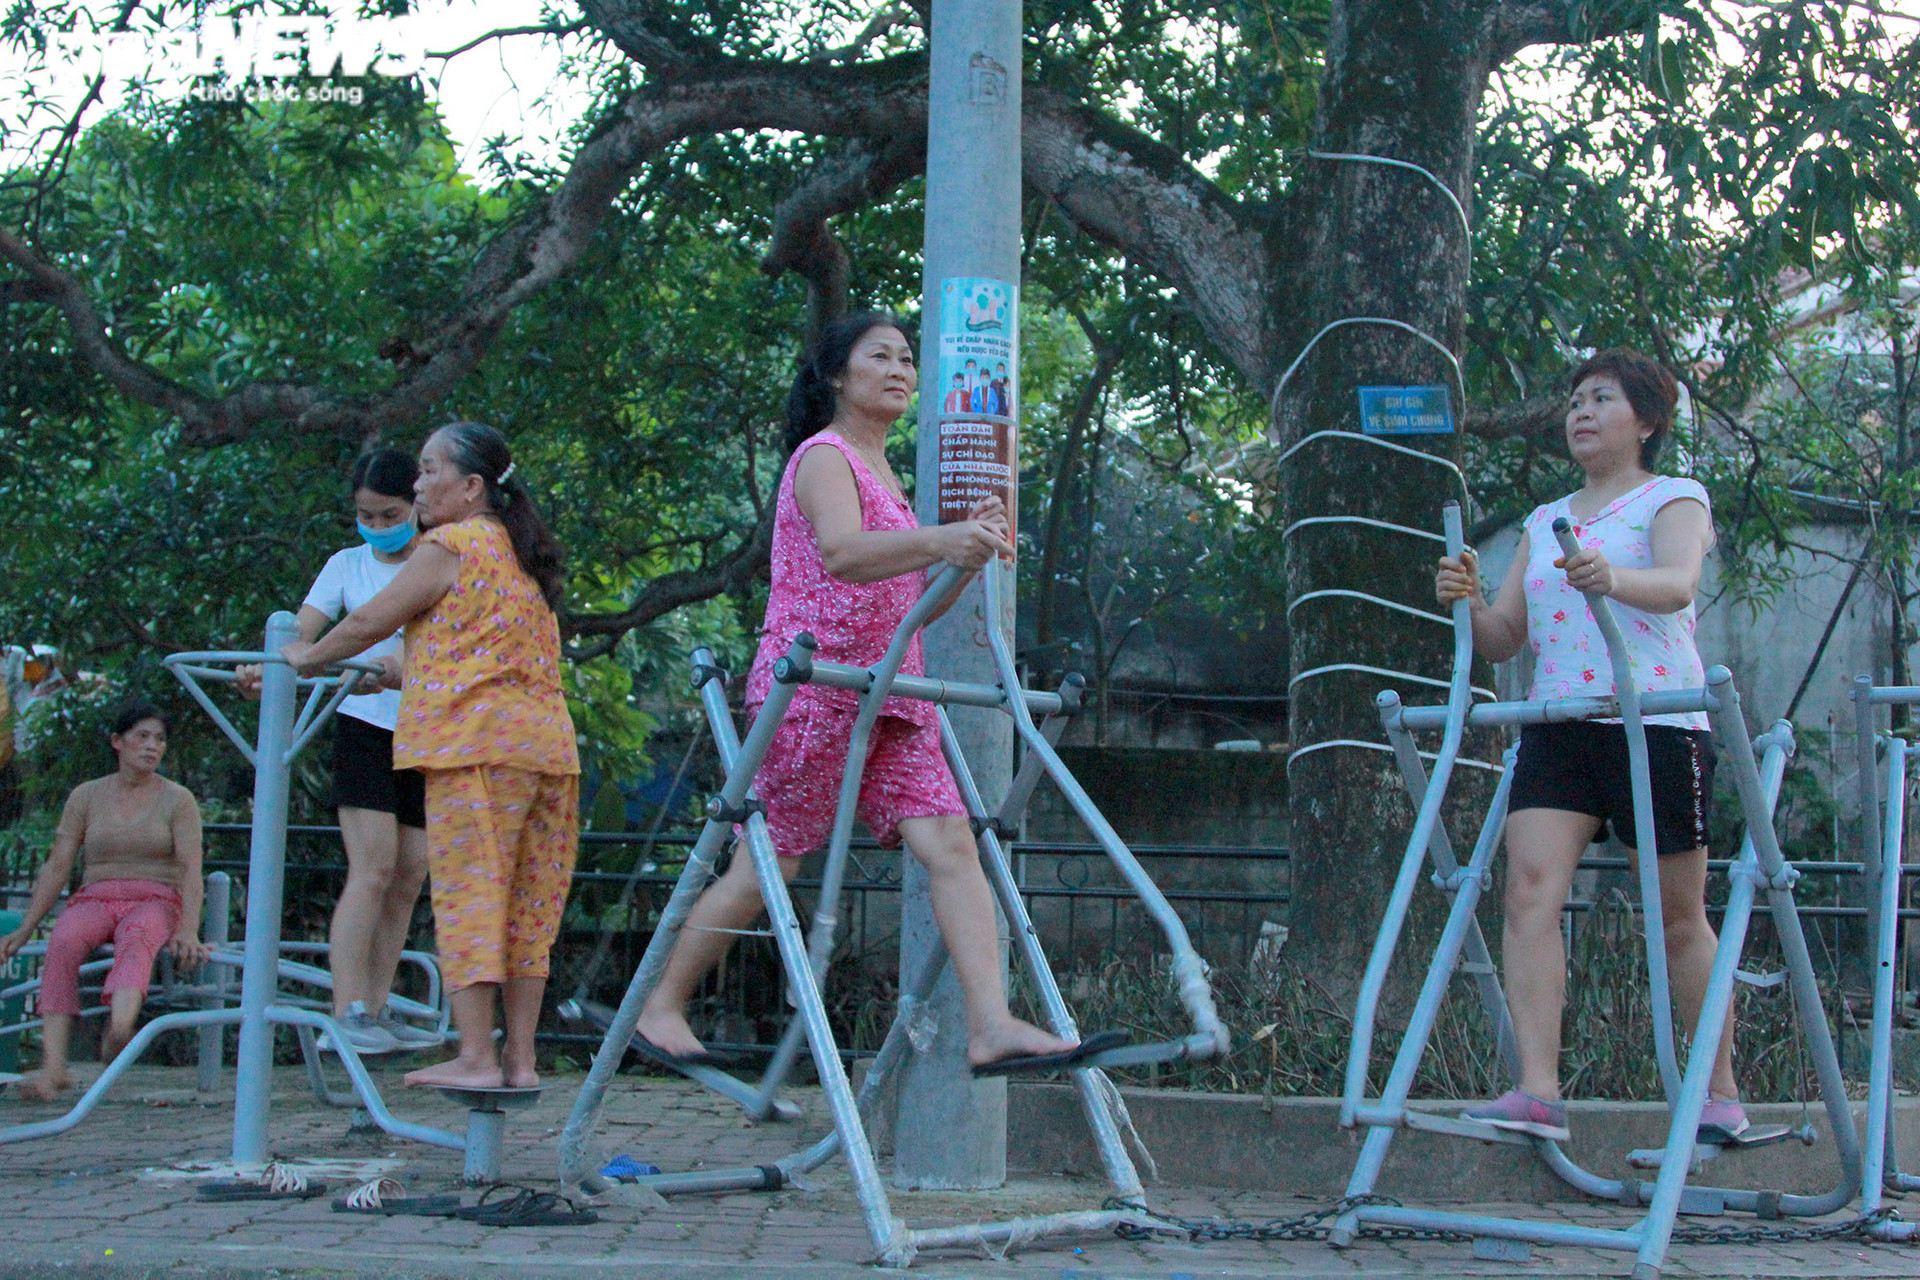 Công viên thu nhỏ ở làng quê ngoại thành Hà Nội hút hồn người già, trẻ nhỏ - 10